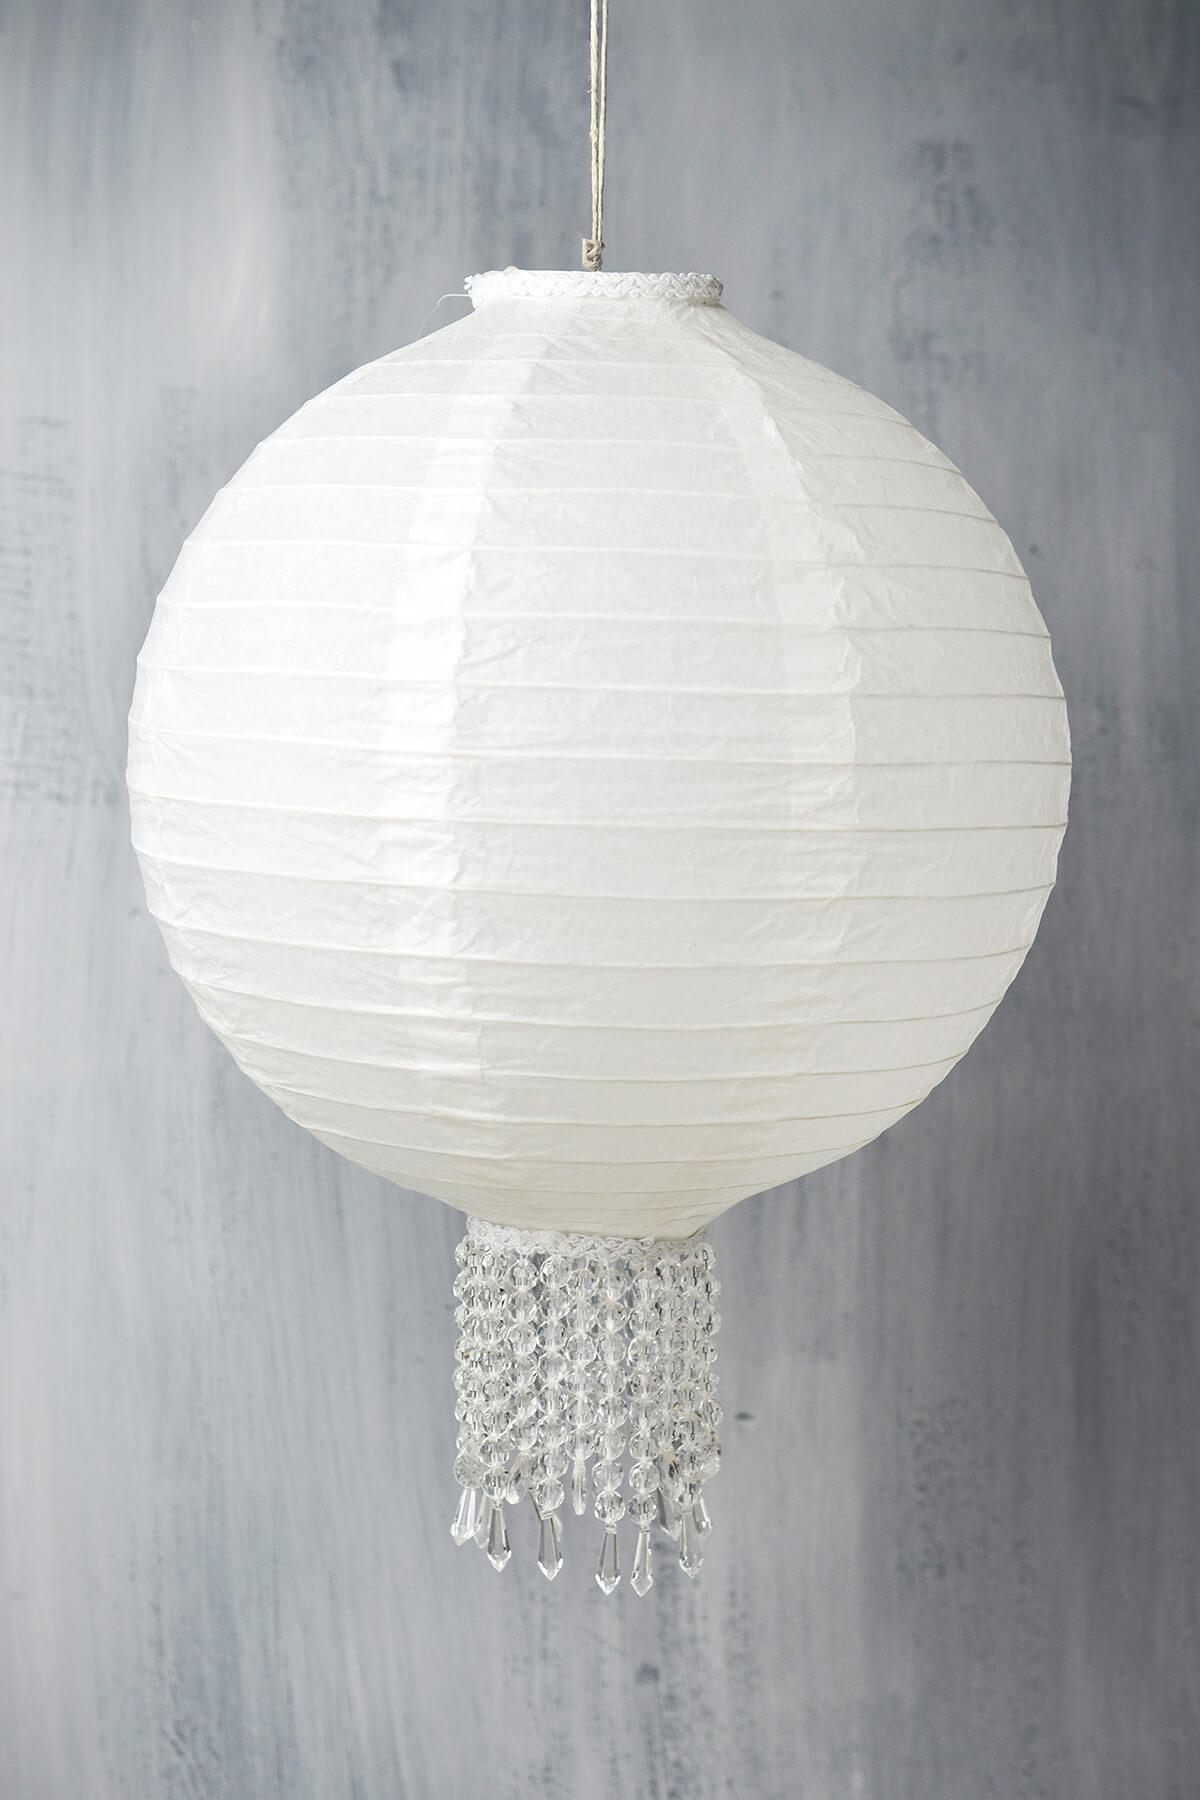 Crystal 12" White Wedding Paper Lanterns